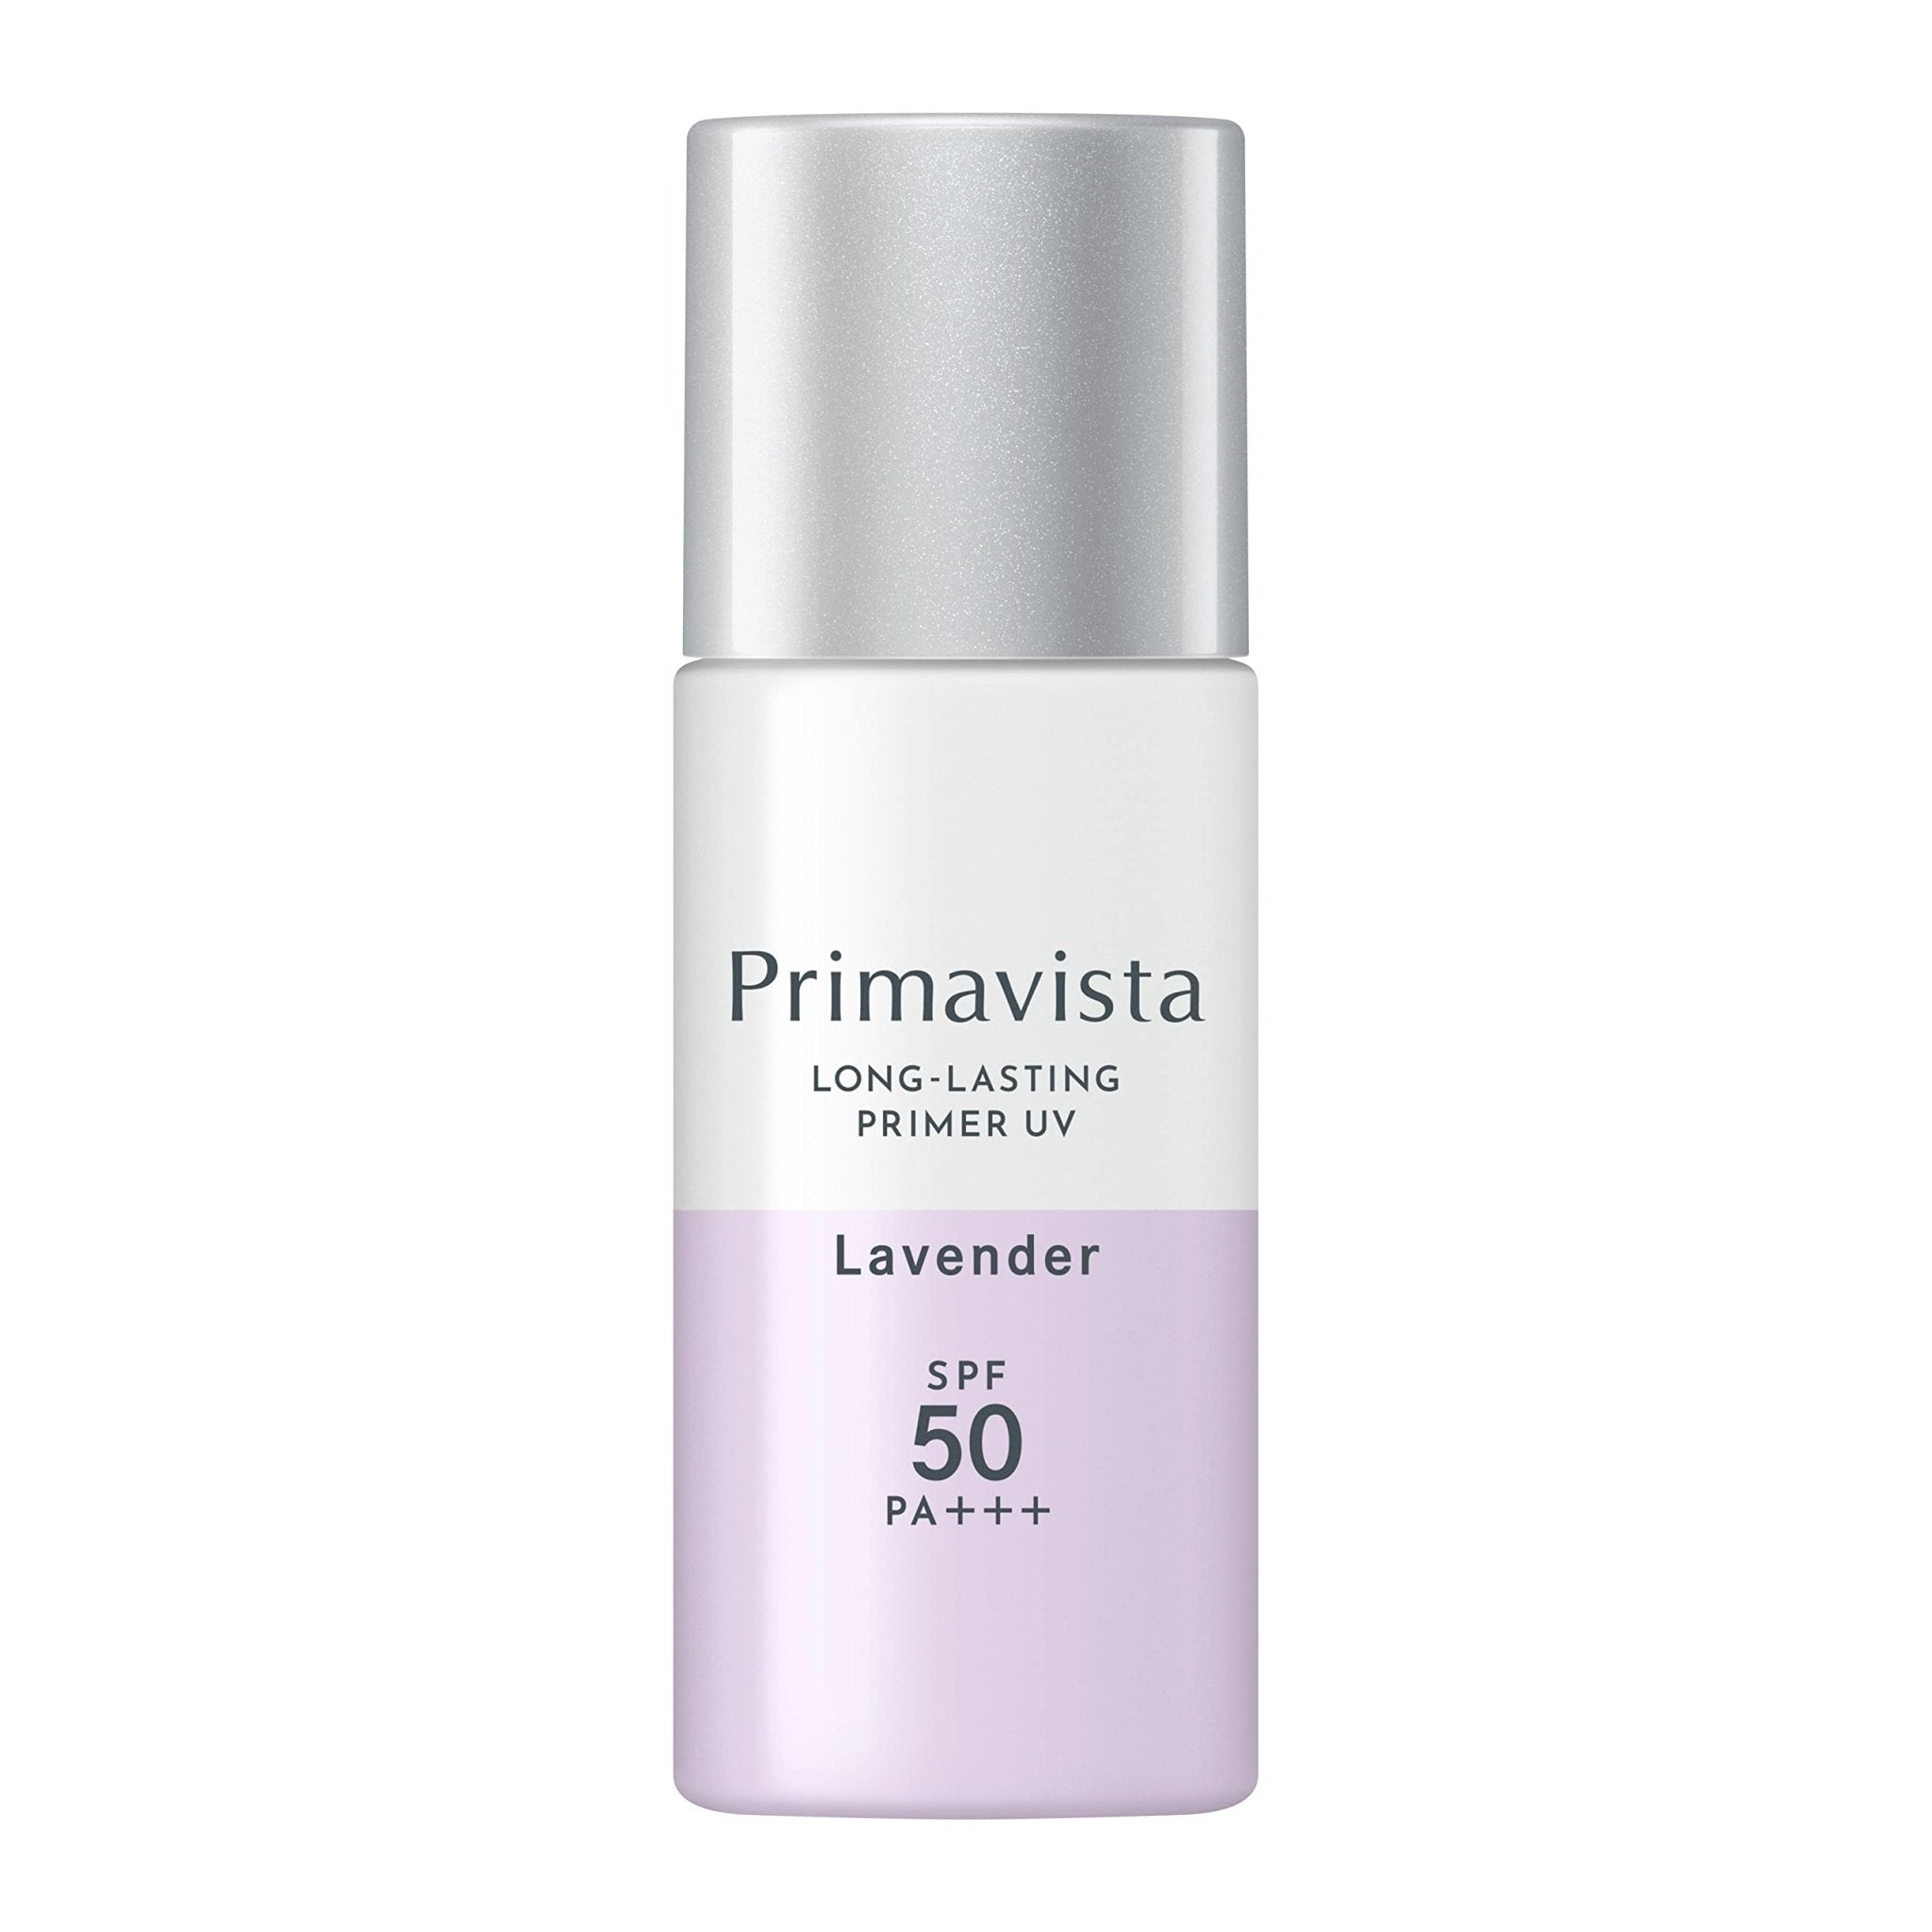 Kao Sofina Primavista Long - Lasting Primer UV Lavender SPF50 PA+++ 25ml - Prevent Sebum Breakage